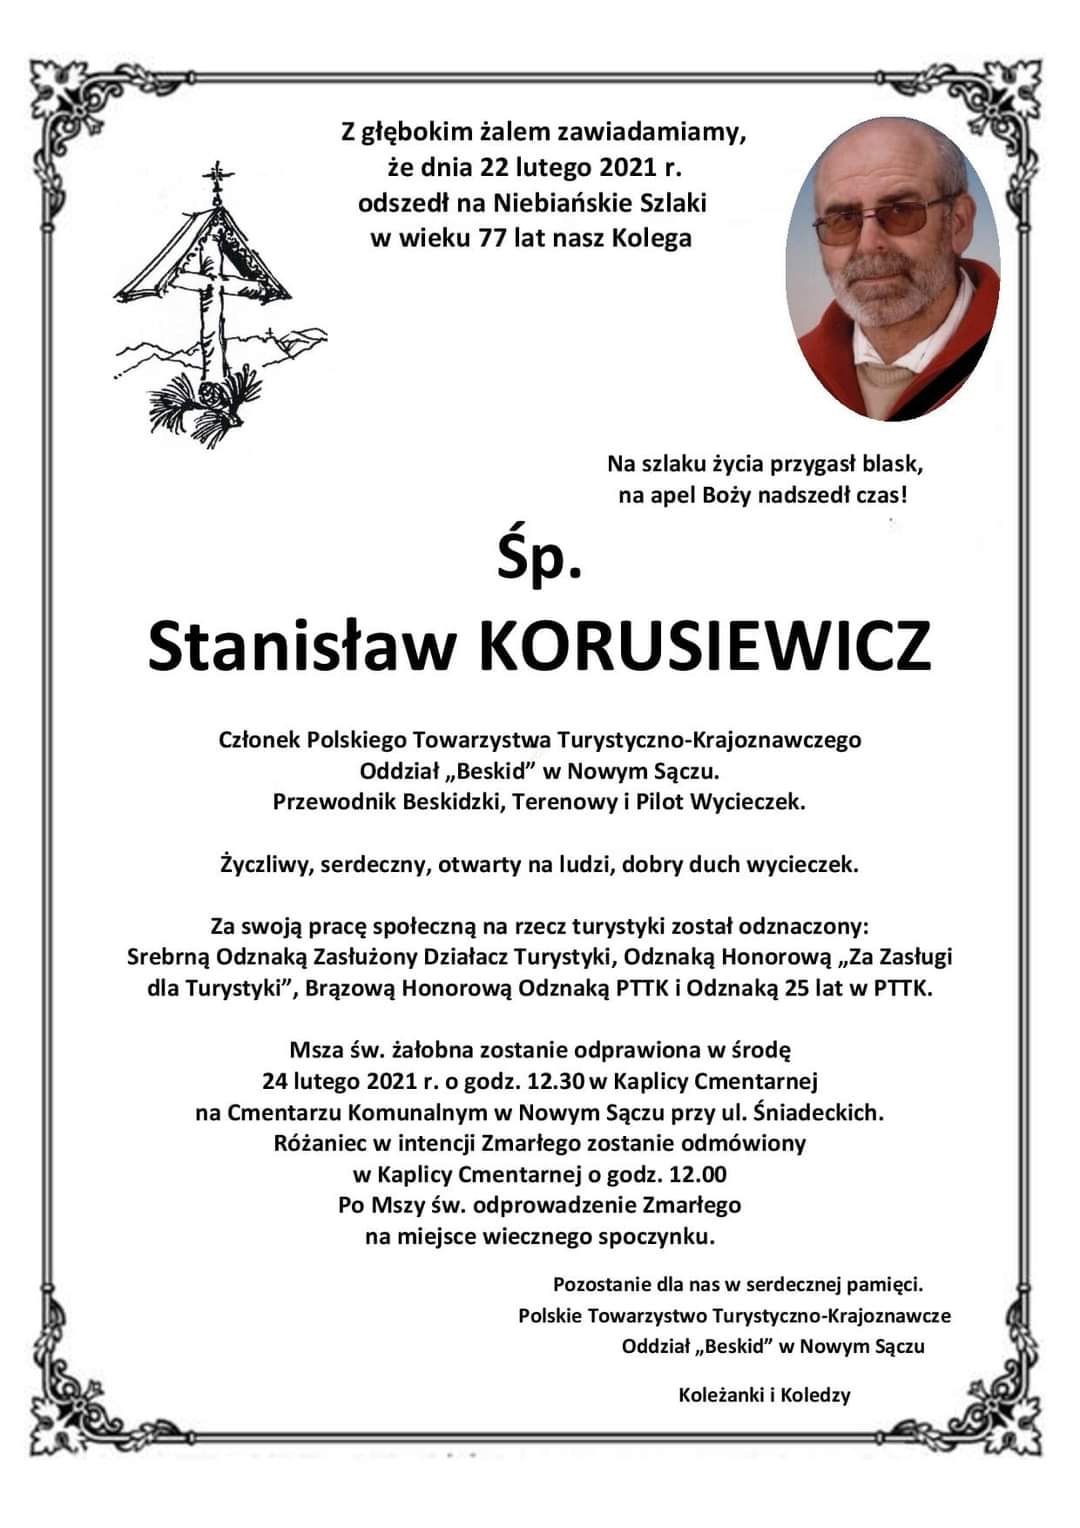 Stanislaw Korusiewicz